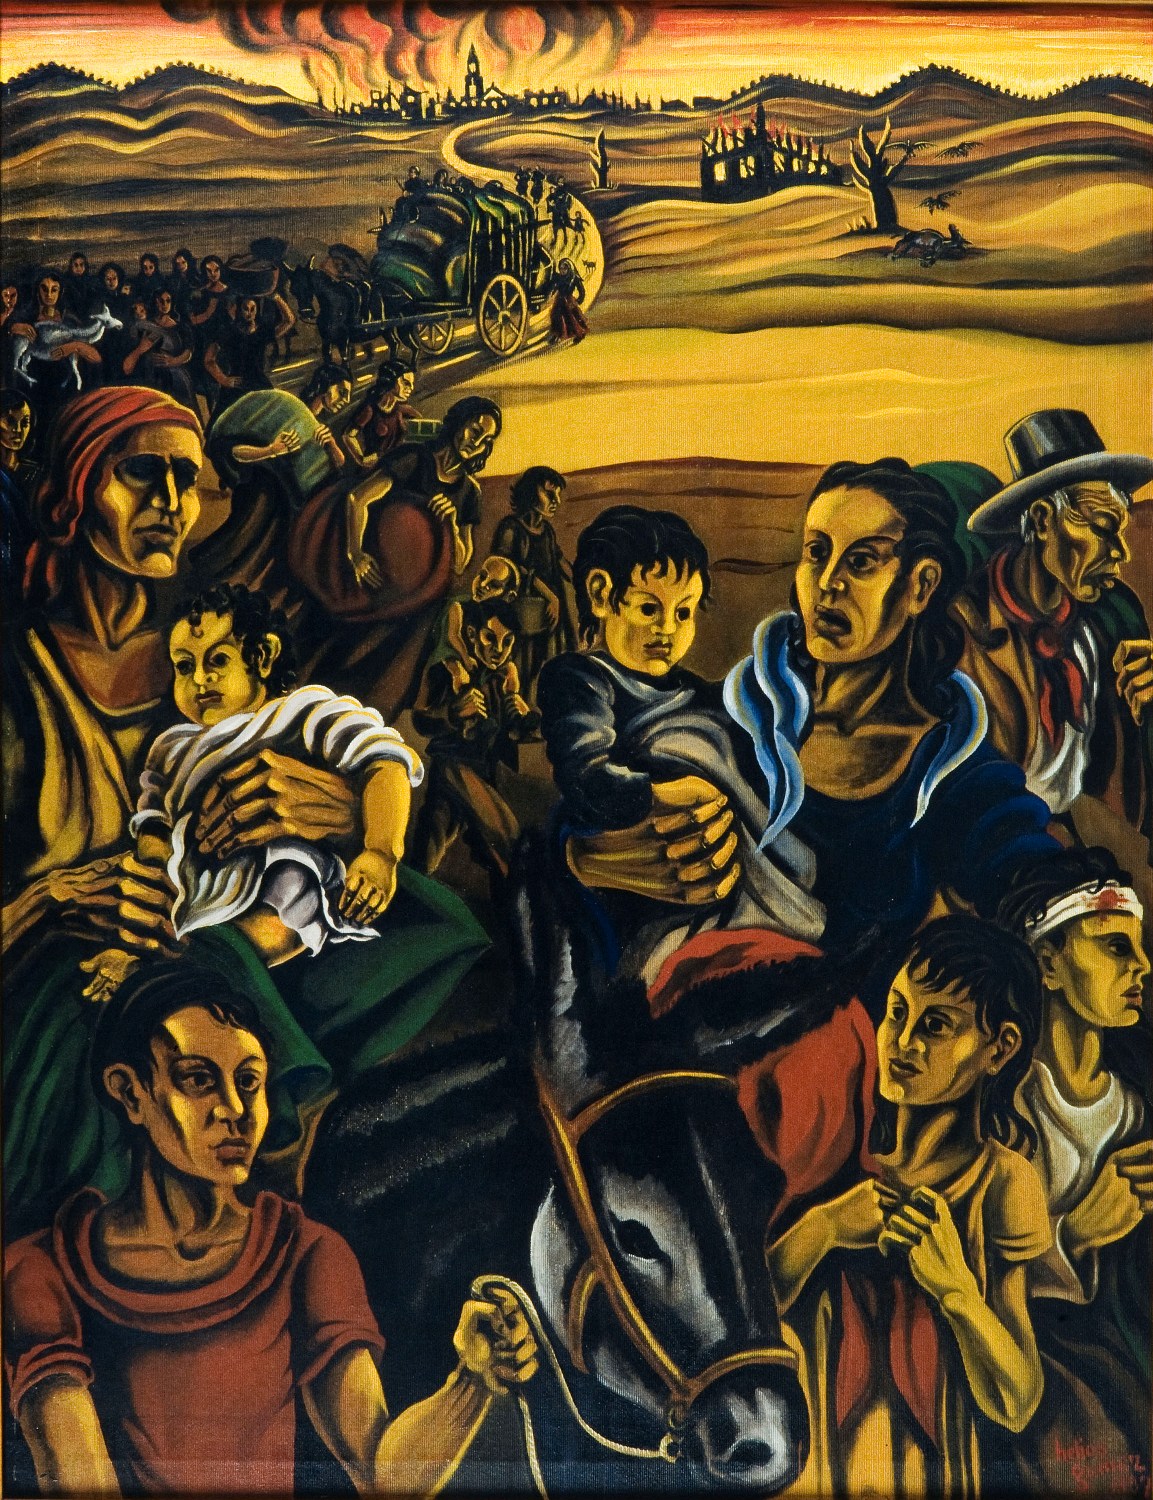 Εργο του κορυφαίου Ισπανού επαναστάτη ζωγράφου Helios Gomez με θέμα τους πρόσφυγες της Δημοκρατικής Ισπανίας.